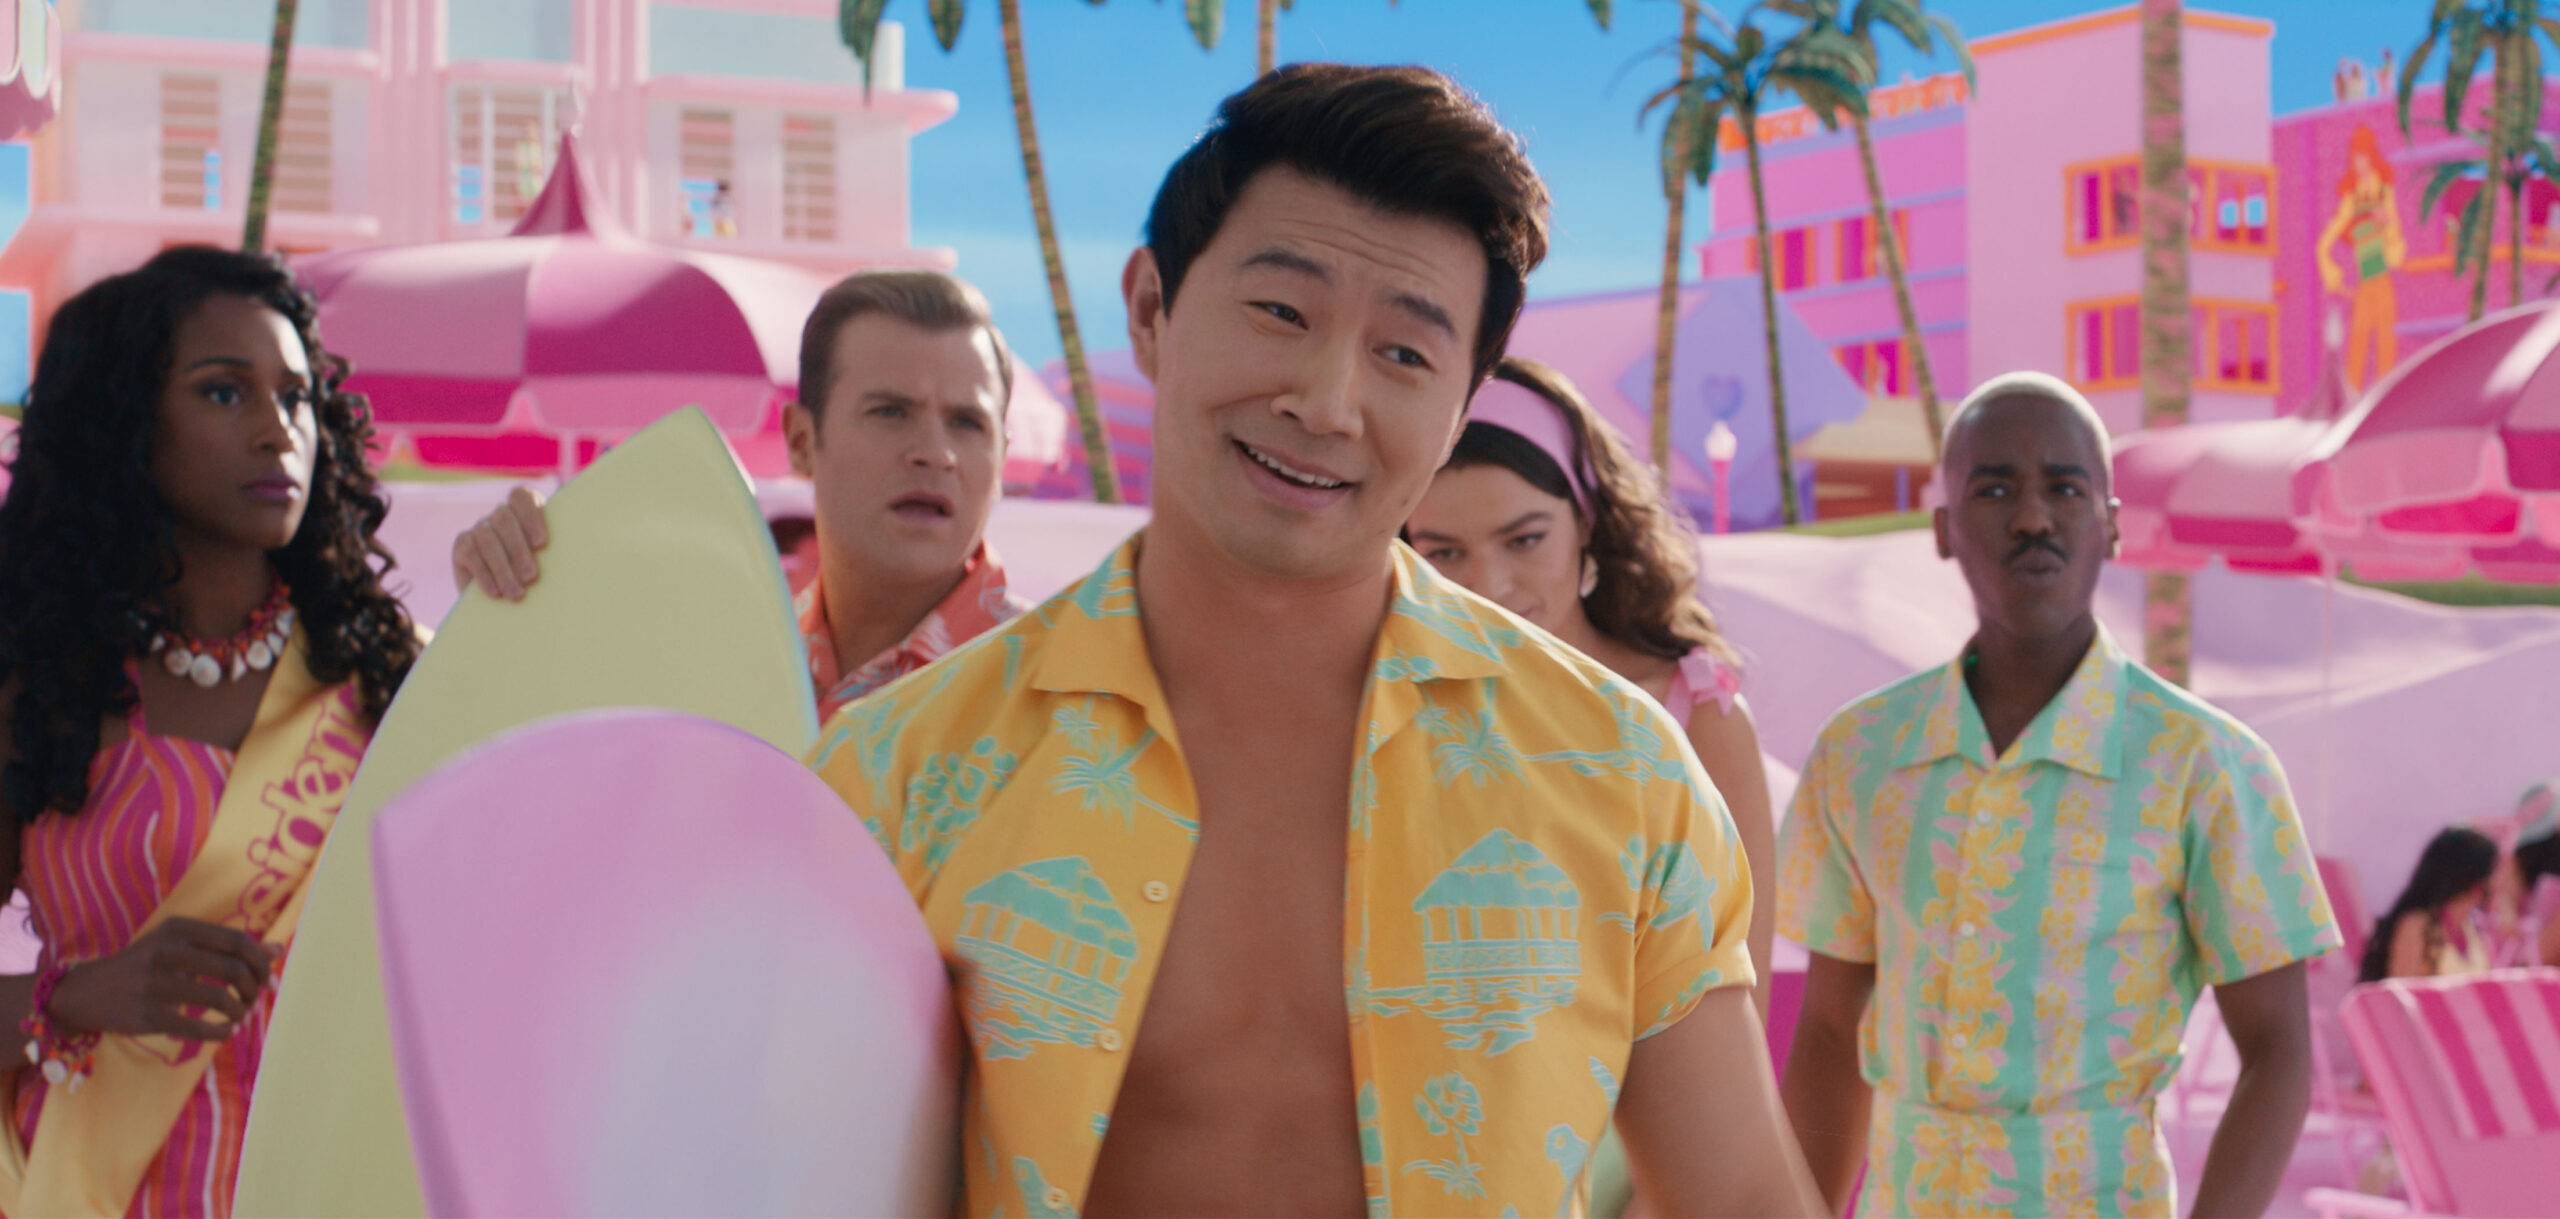 Ken, personagem do filme 'Barbie', rindo para a câmera com uma prancha de surf - Censura Barbie Oriente Médio